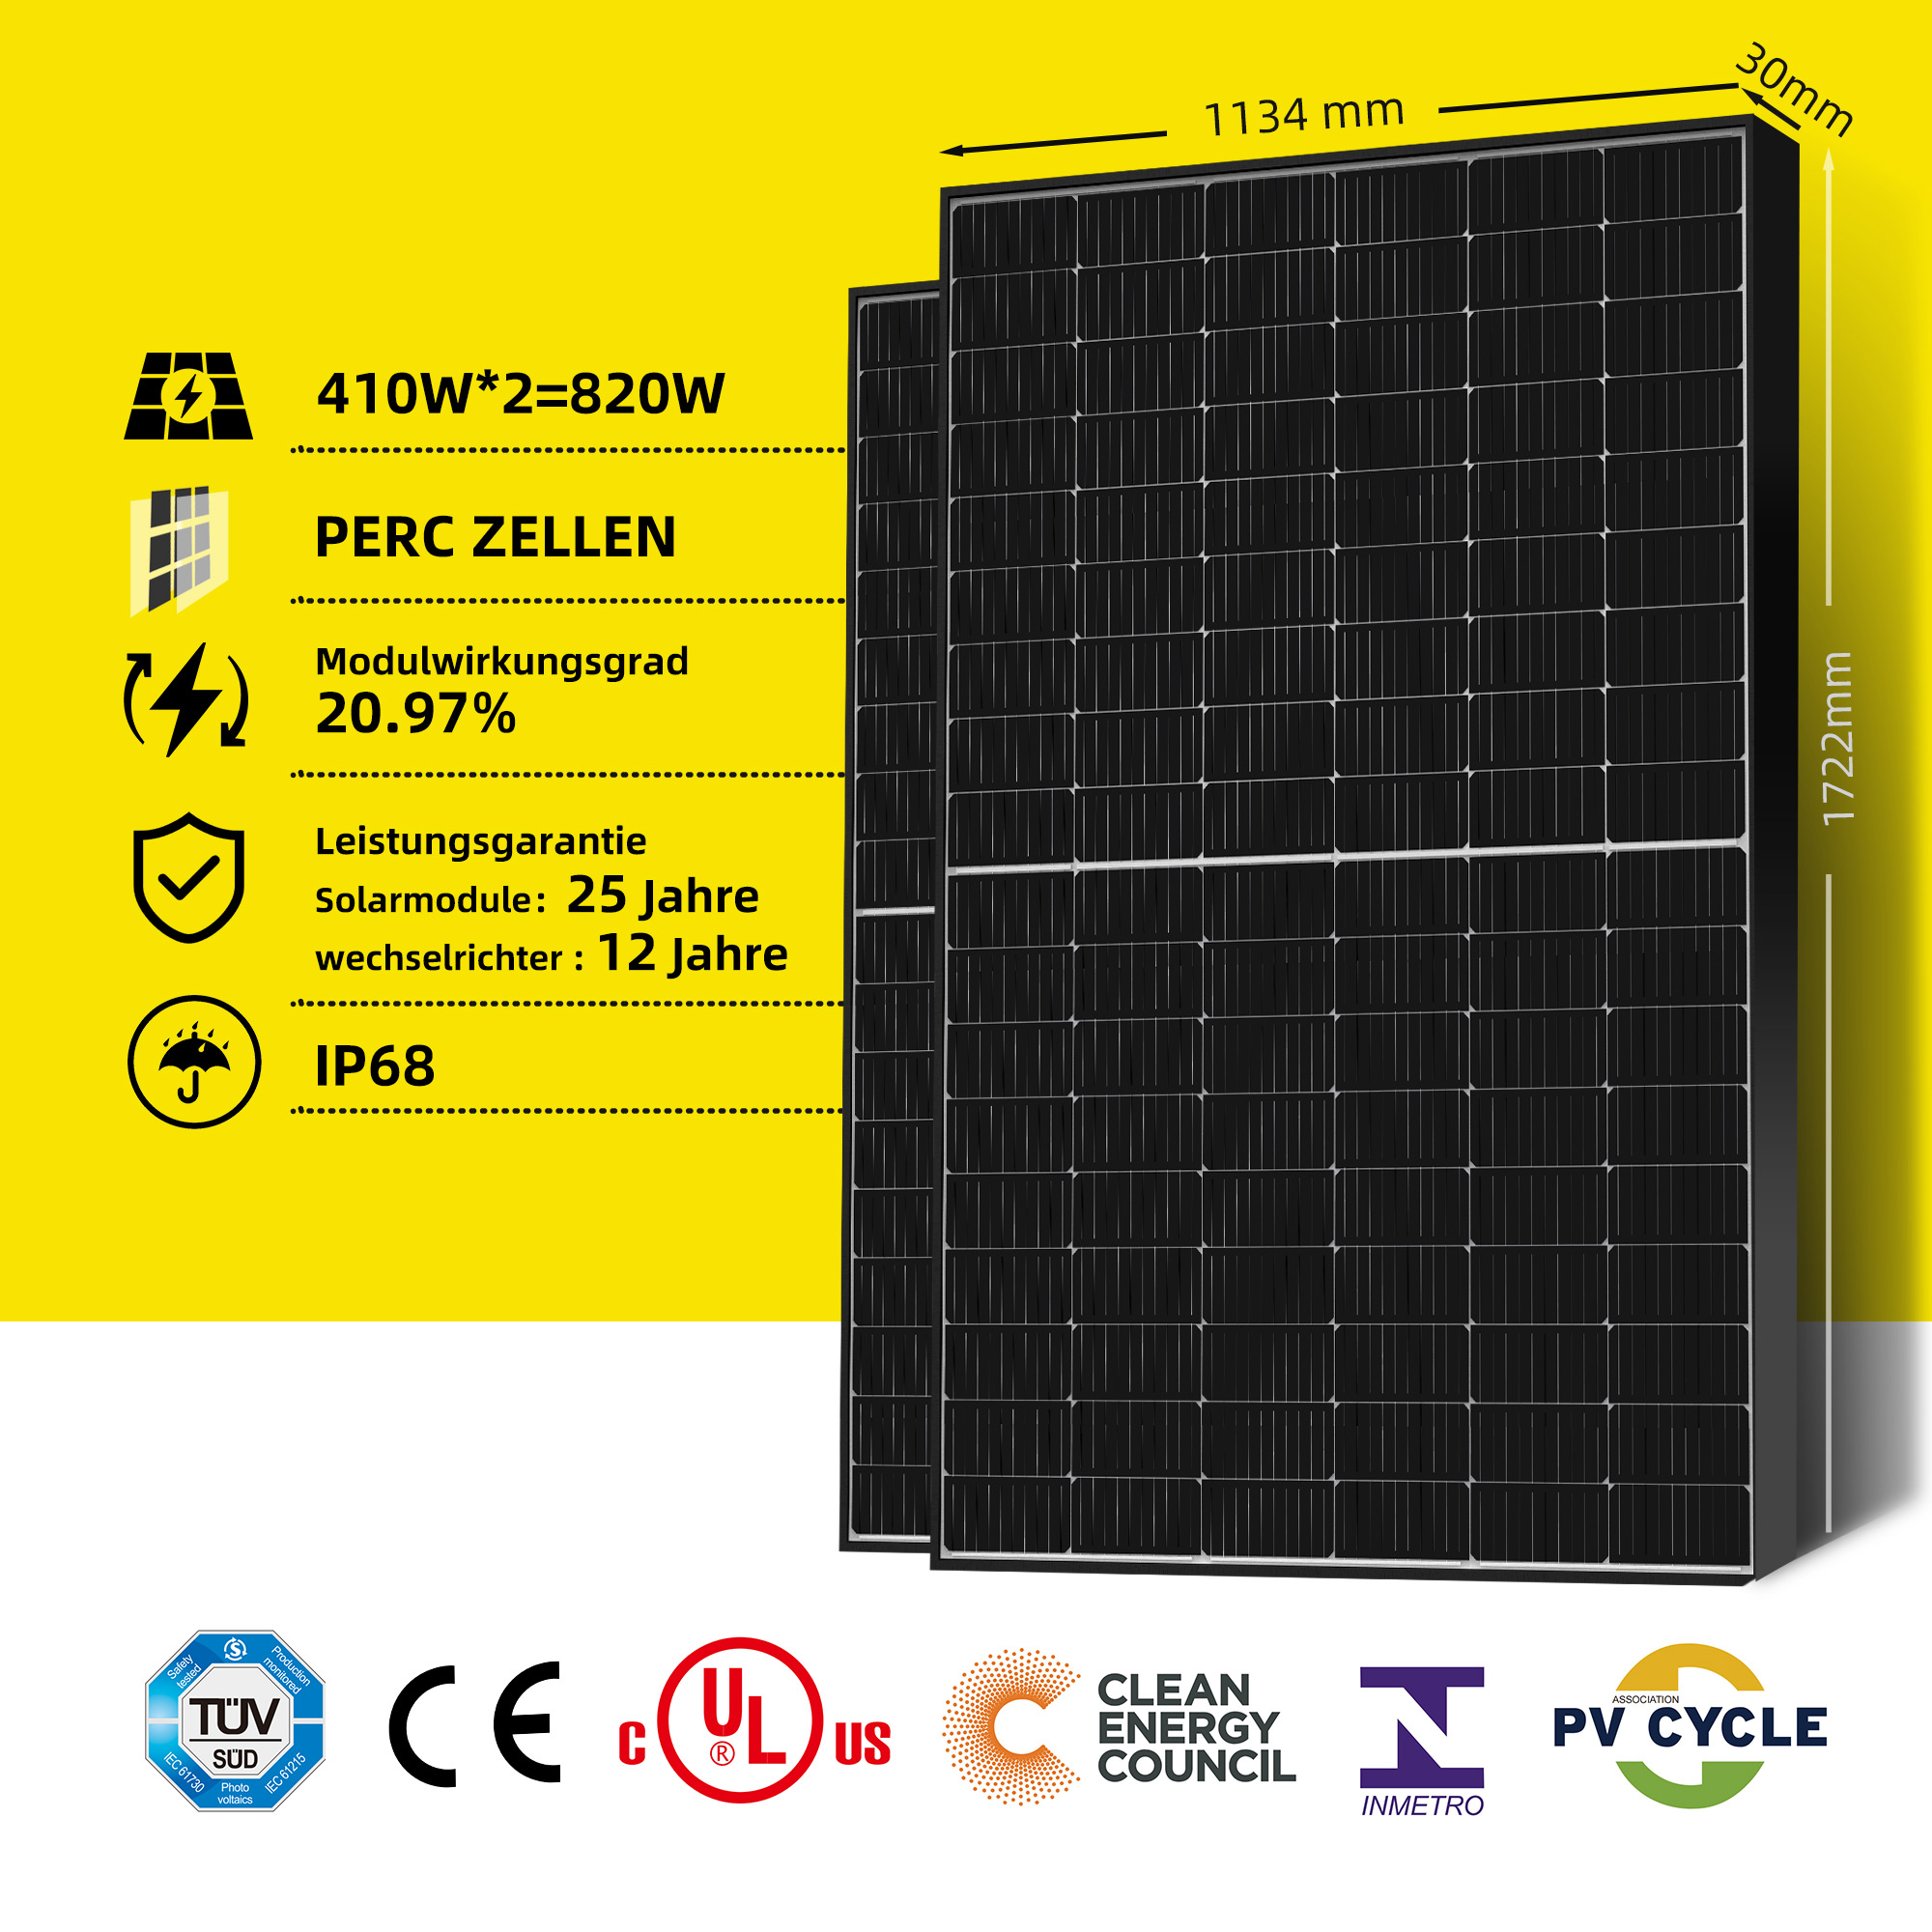 mit 820W Komplett EFORU 800W Solarmodule Balkonkraftwerk 410W Steckdose 2x | Balkon-Solaranlagen